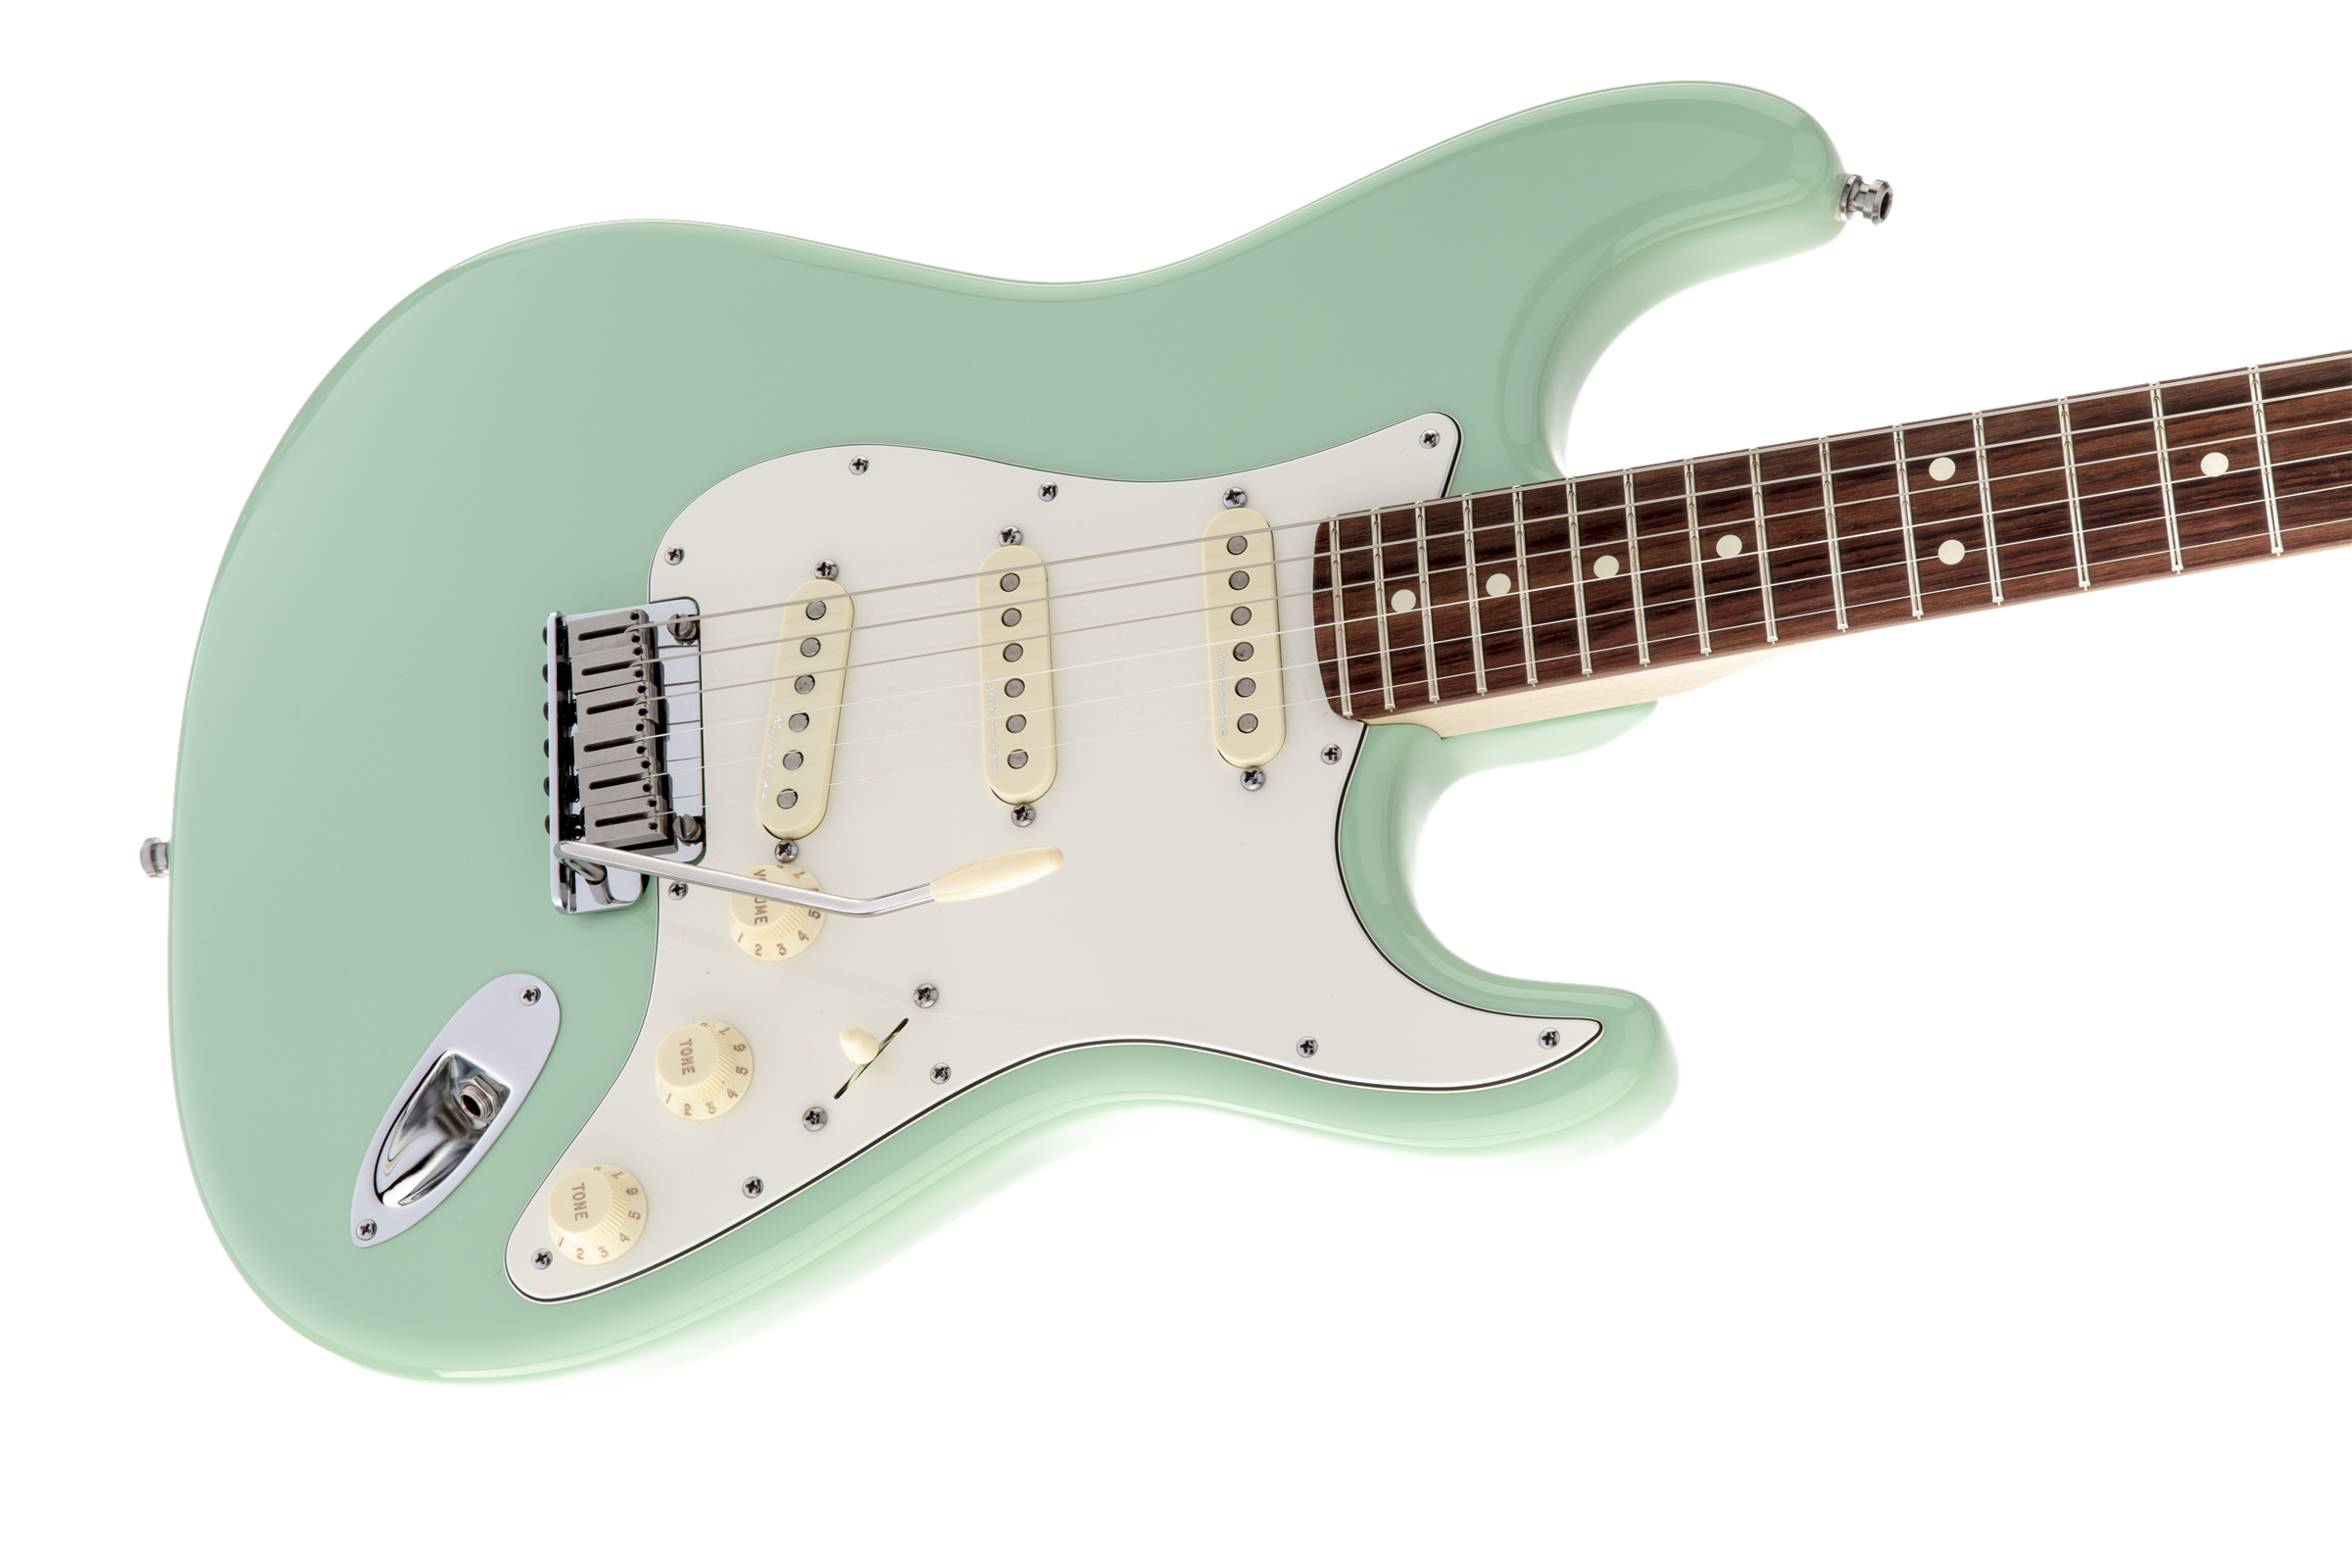 Fender Stratocaster Jeff Beck - Surf Green - Str shape electric guitar - Variation 3